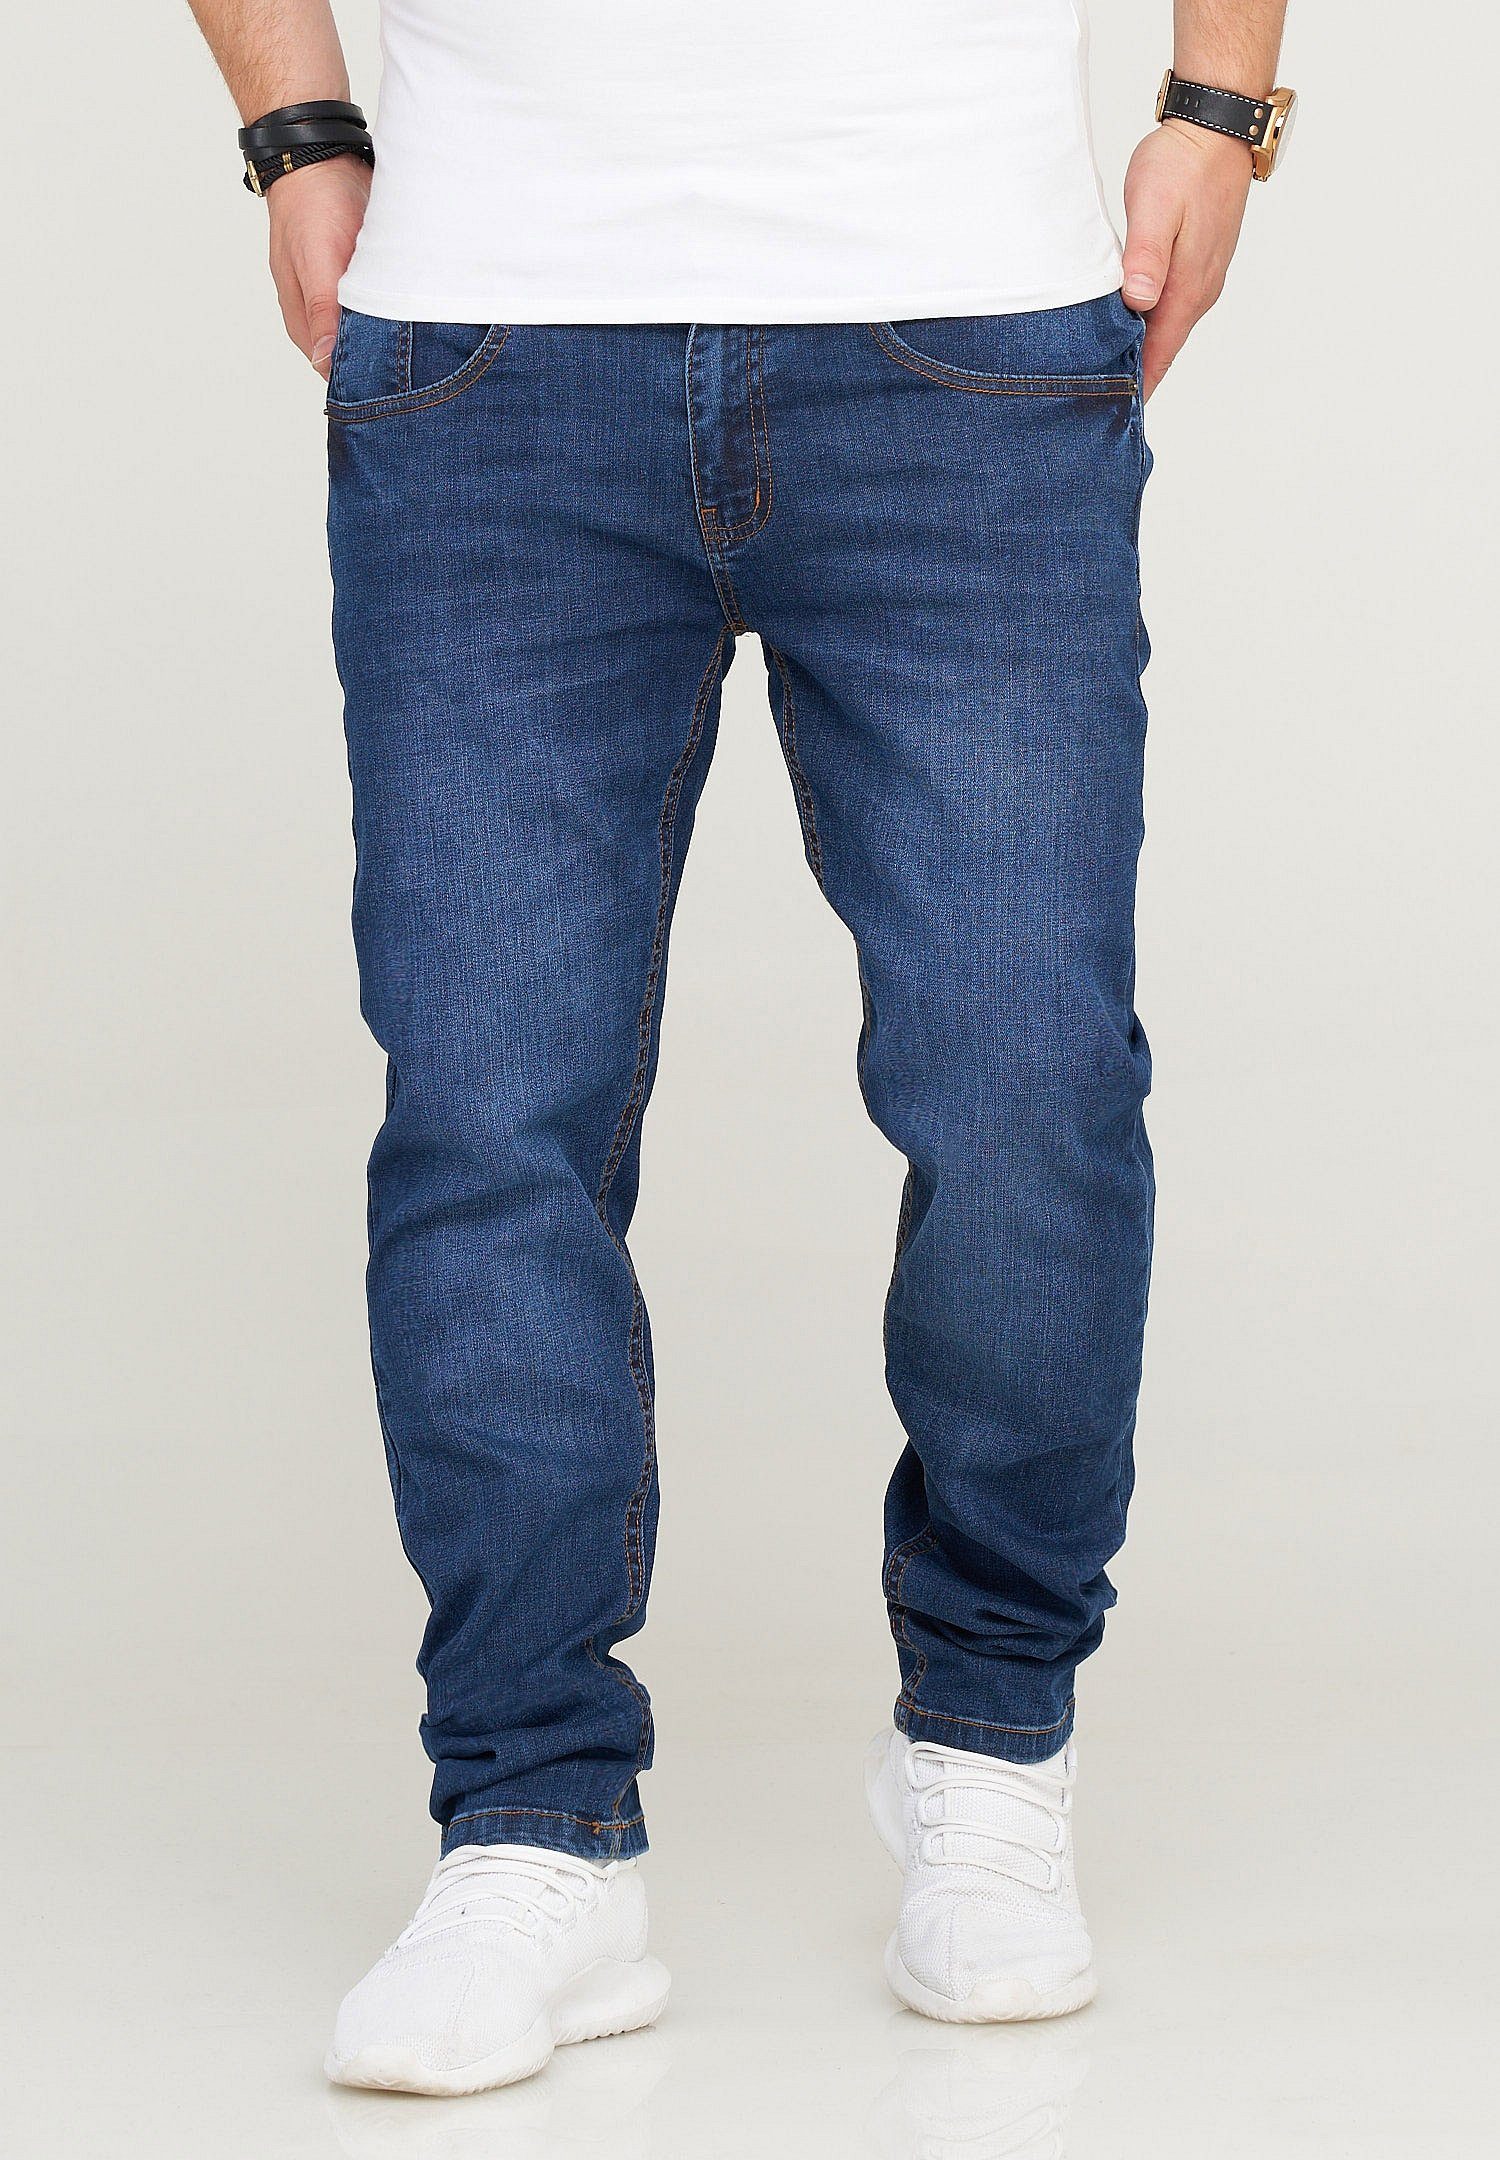 SOULSTAR Slim-fit-Jeans QUIRIN im klassischen 5-Pocket-Stil dunkelblau